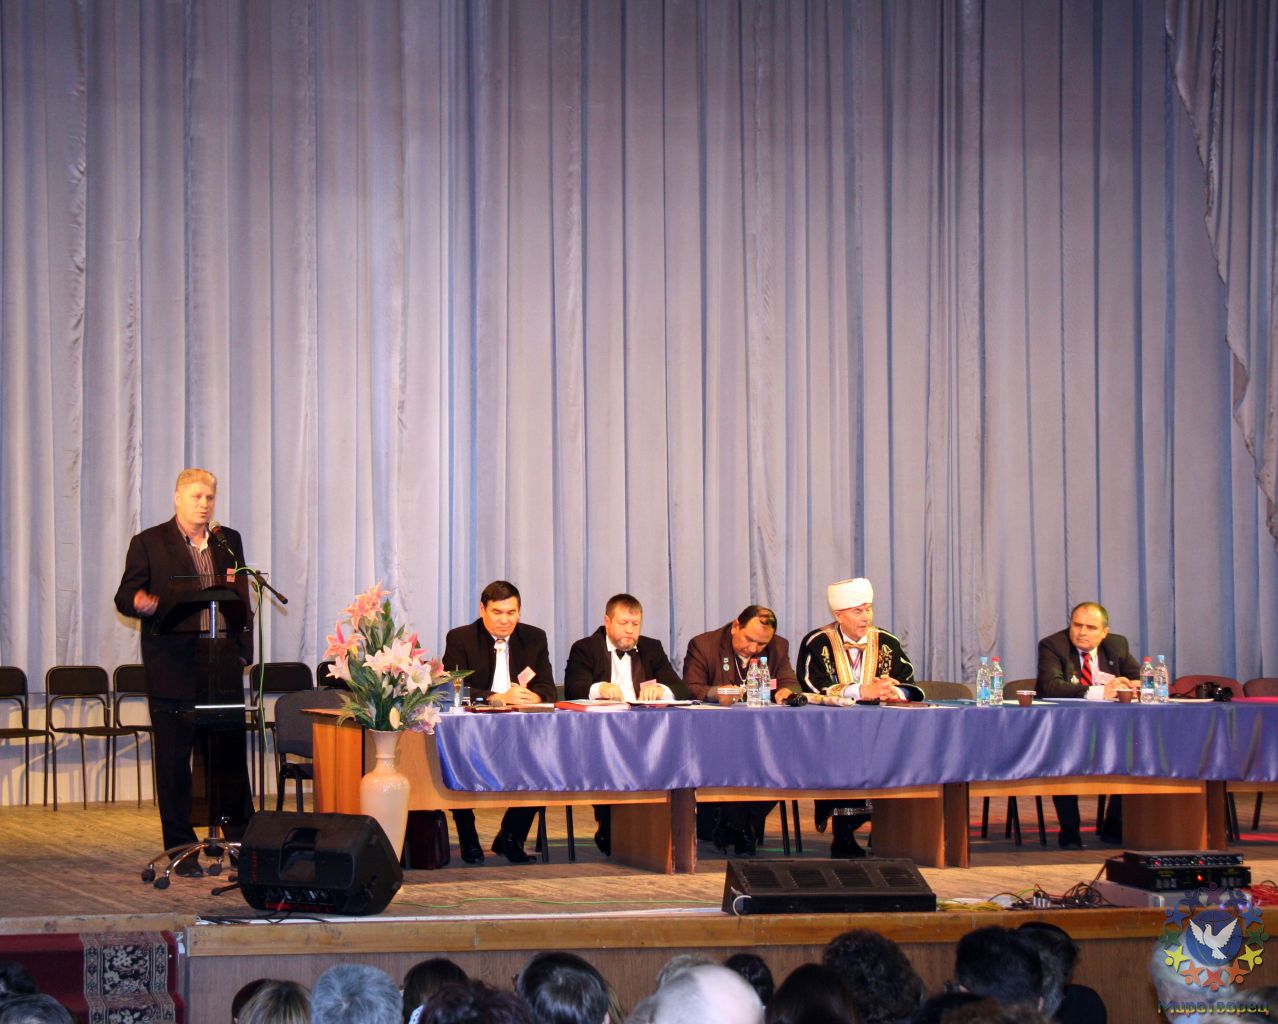 Выступление на конференции руководителя СРБОО «МироТворец» - Конференция «Современная, традиционная медицина и духовные практики» 2009